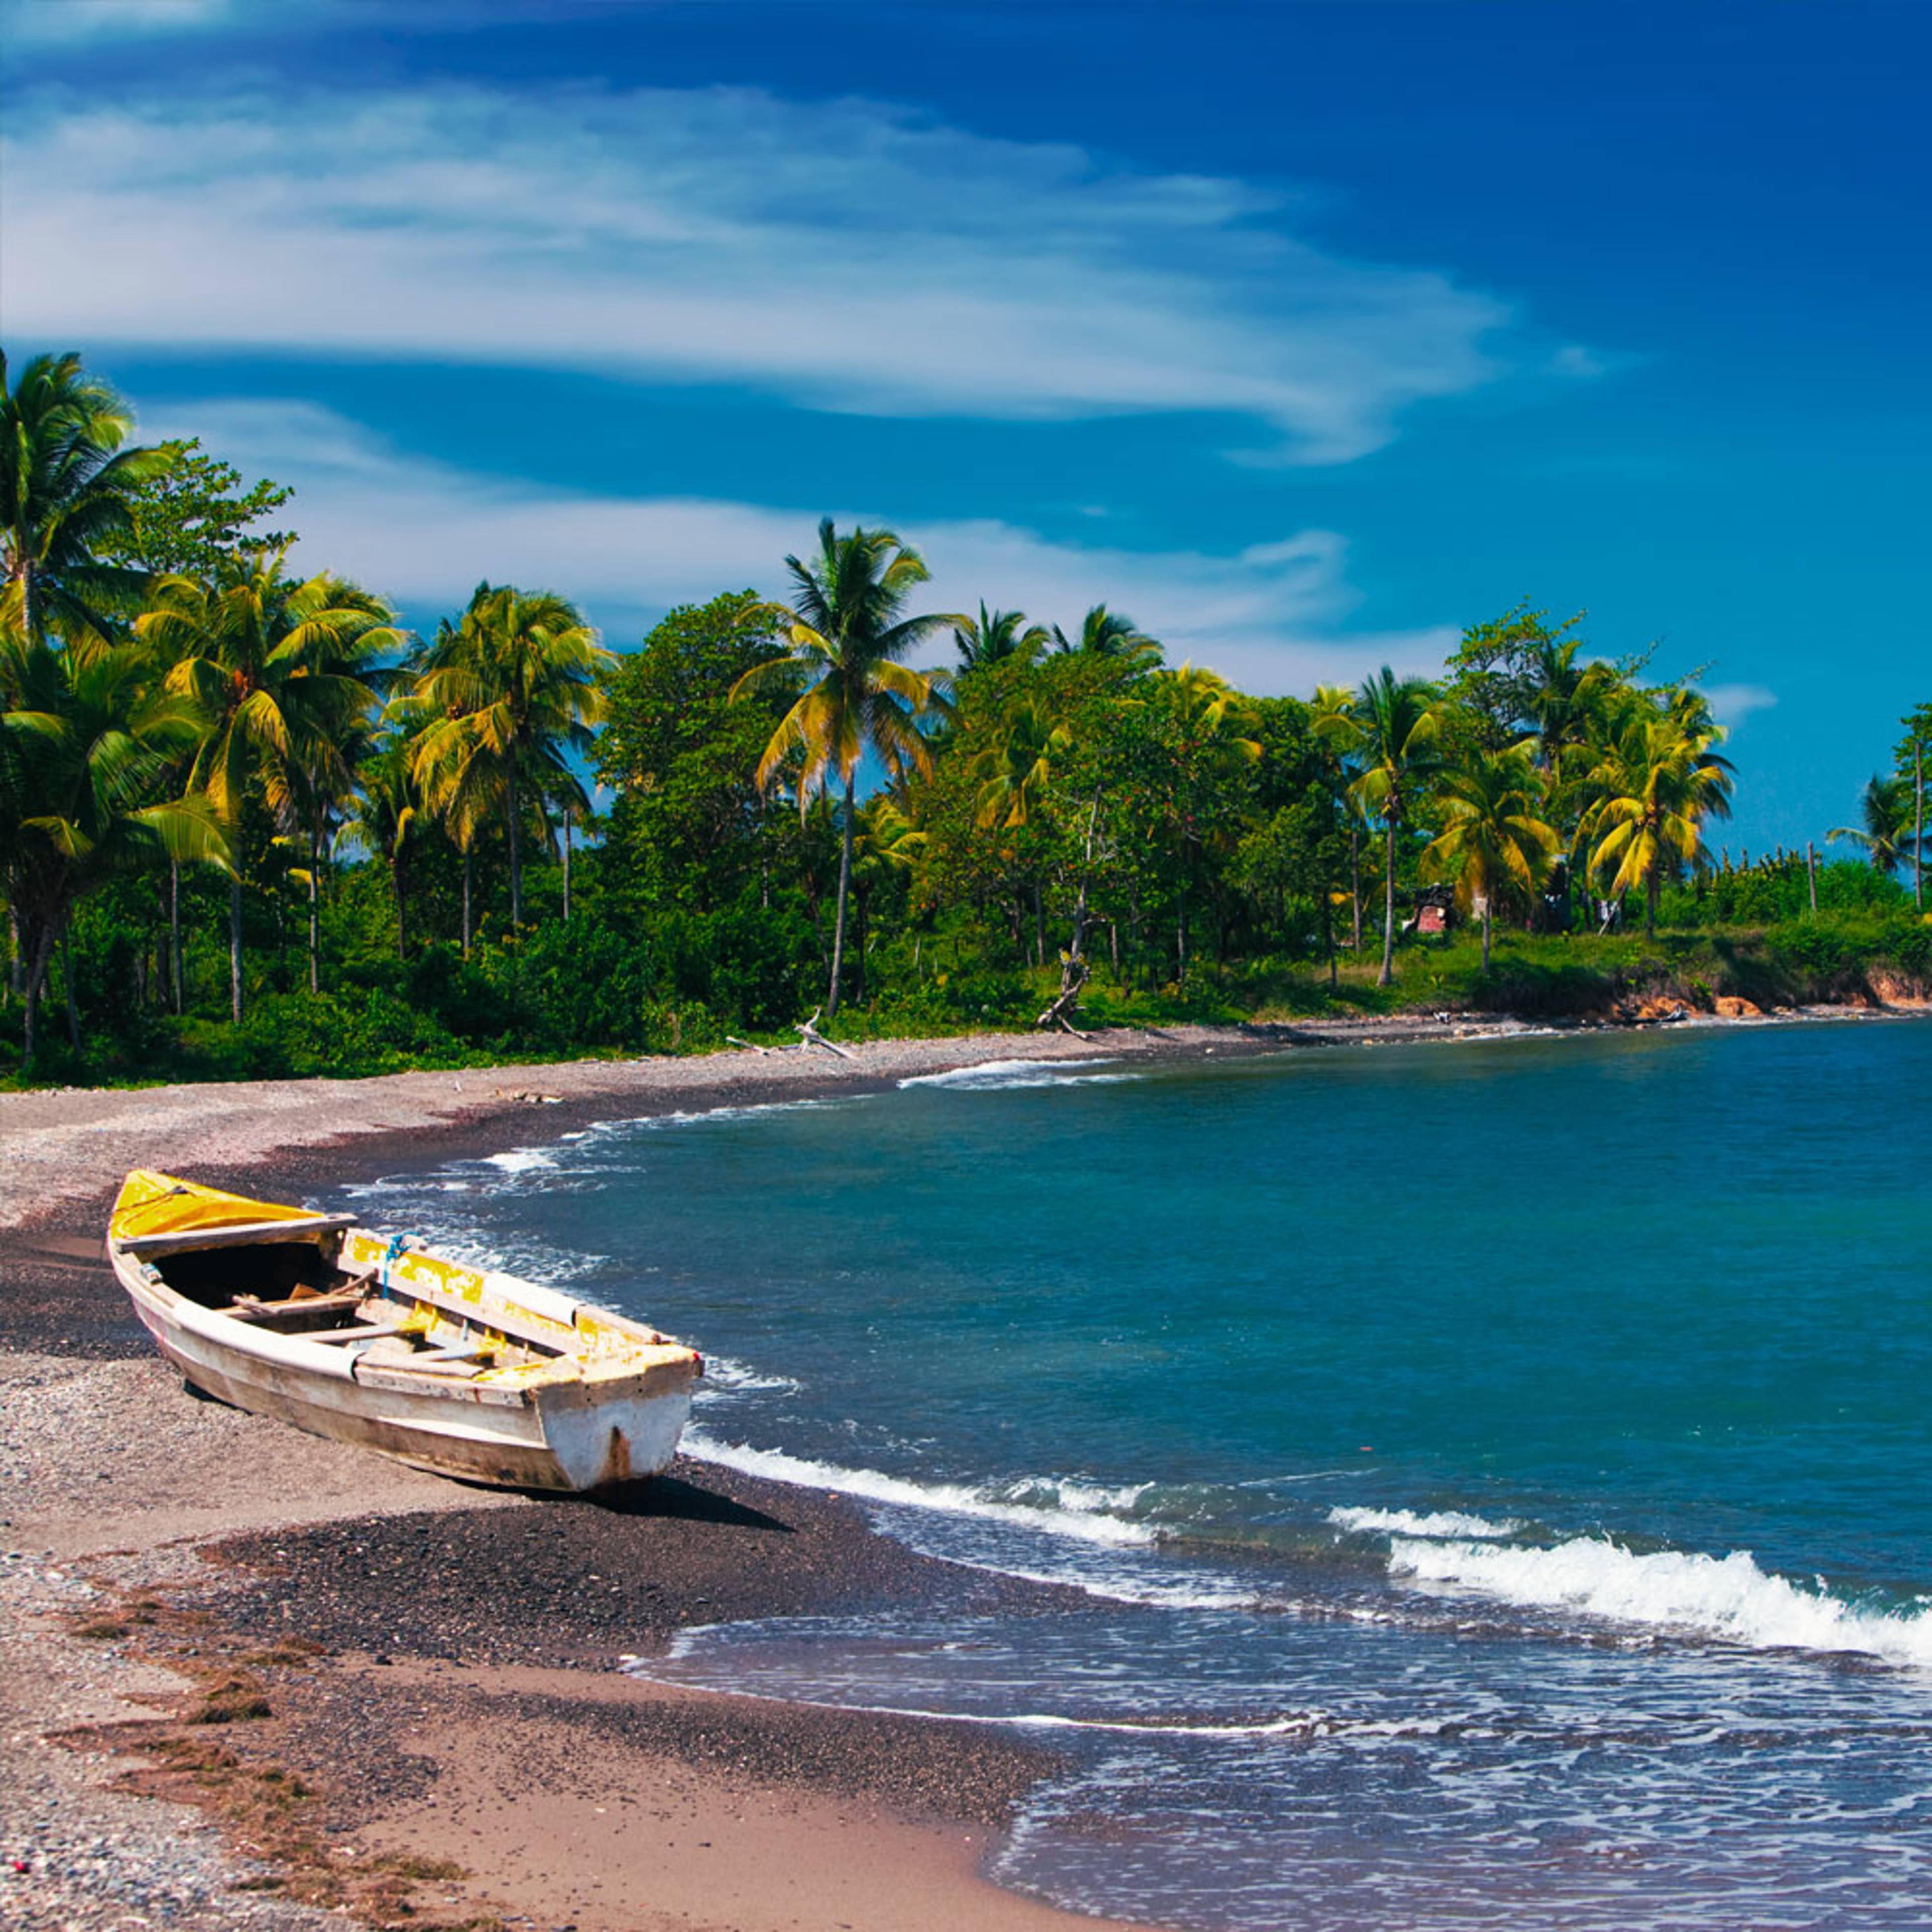 Découvrez les plus belles plages lors de votre voyage en Jamaïque 100% sur mesure